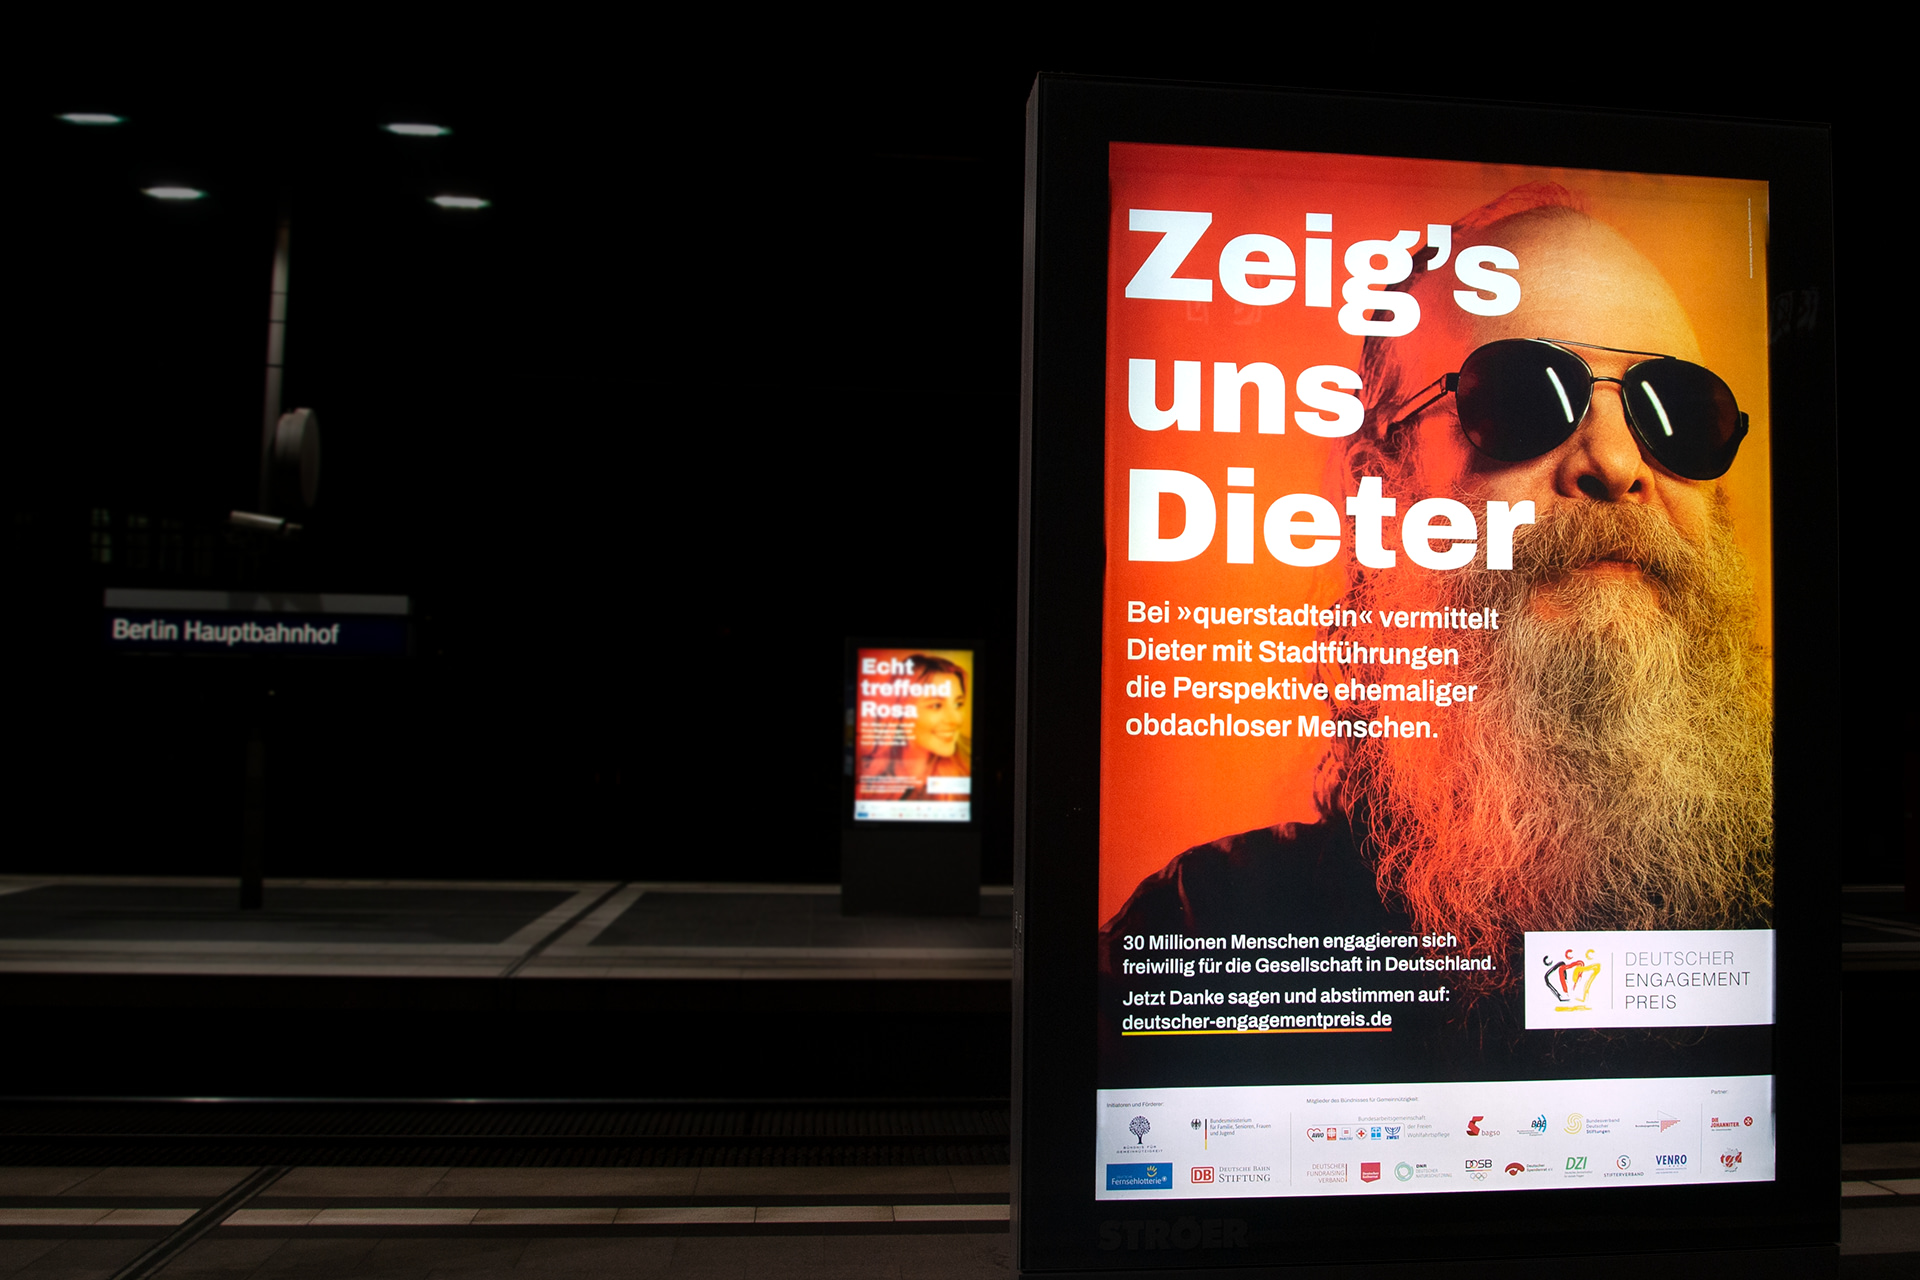 Echt Stark, Deutscher Engagementpreis Kampagnen Plakat mit bärtigem Mann und Slogan `Zeig's uns Dieter`